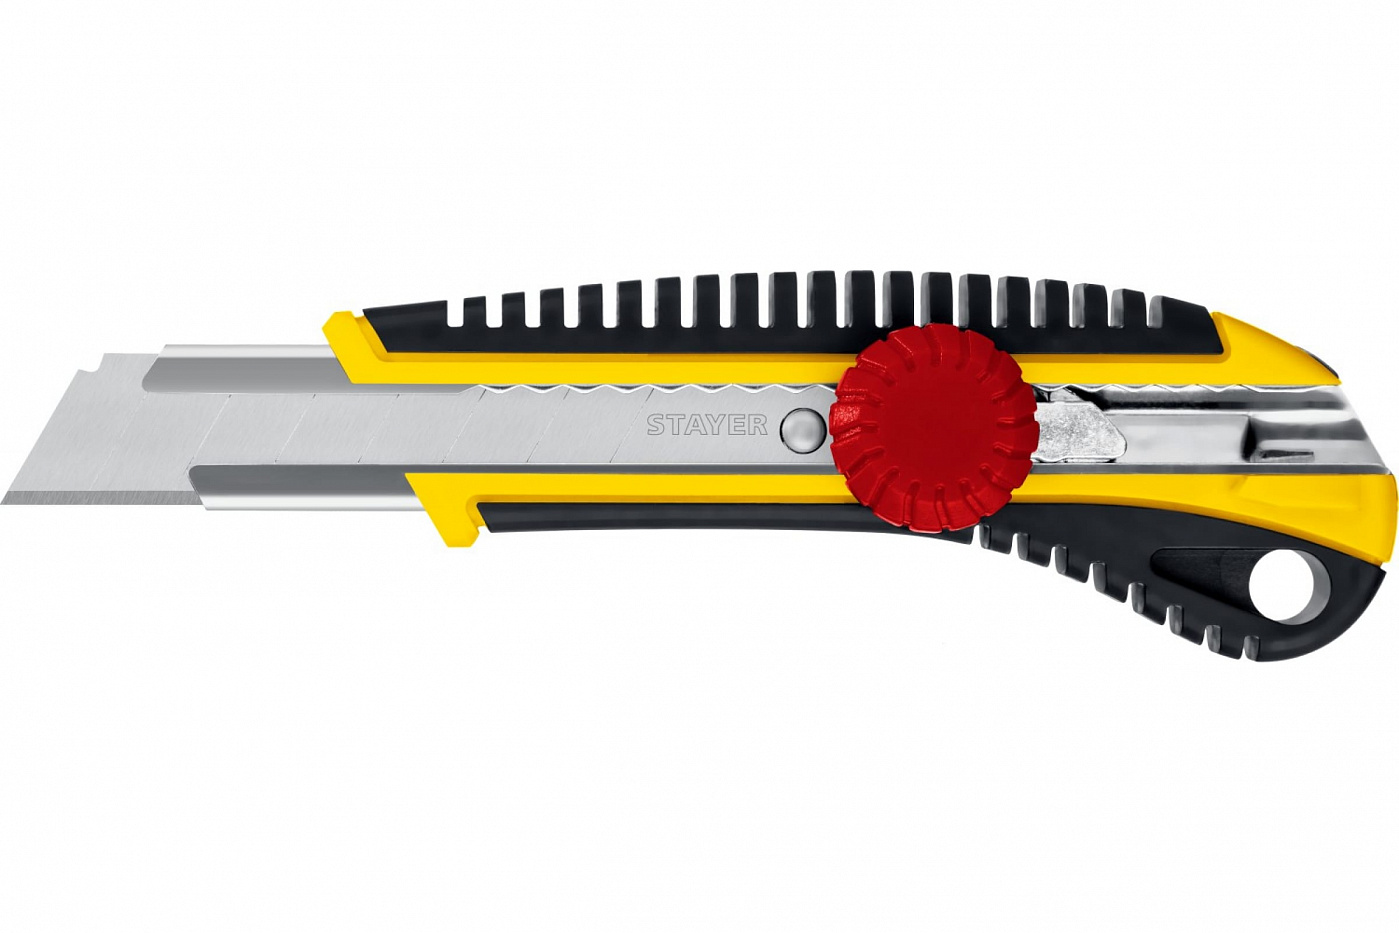 Нож с винтовым фиксатором Stayer KS-18, сегмент. лезвия 18 мм лезвия stayer master сегментированные 9 мм 5 шт